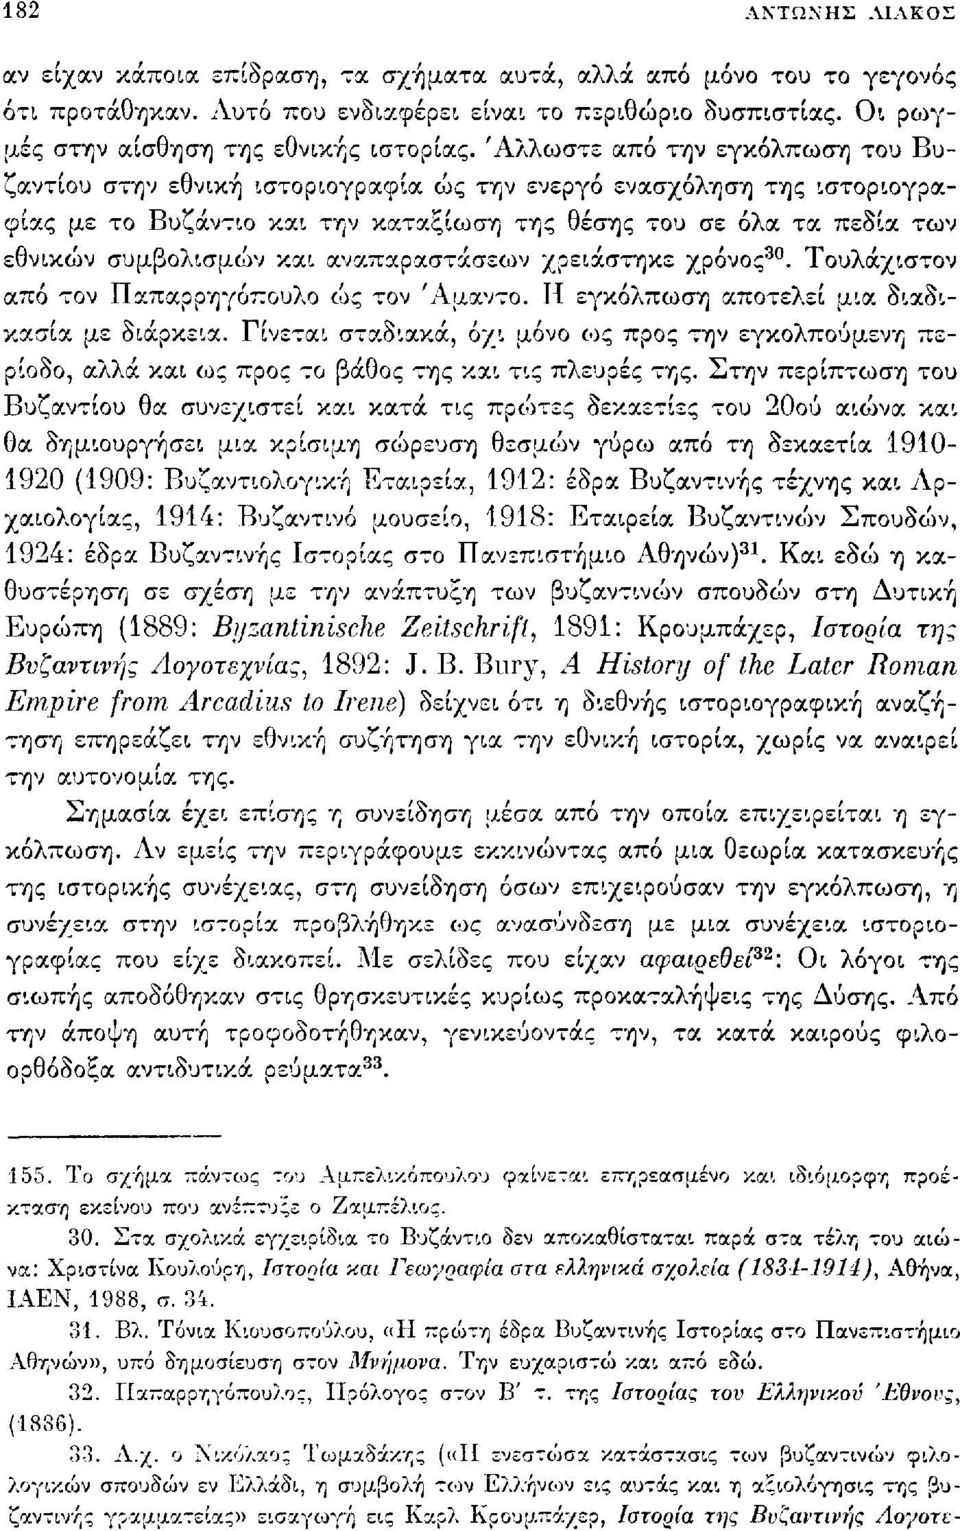 Άλλωστε από την εγκόλπωση του Βυζαντίου στην εθνική ιστοριογραφία ως την ενεργό ενασχόληση της ιστοριογραφίας με το Βυζάντιο και την καταξίωση της θέσης του σε όλα τα πεδία των εθνικών συμβολισμών